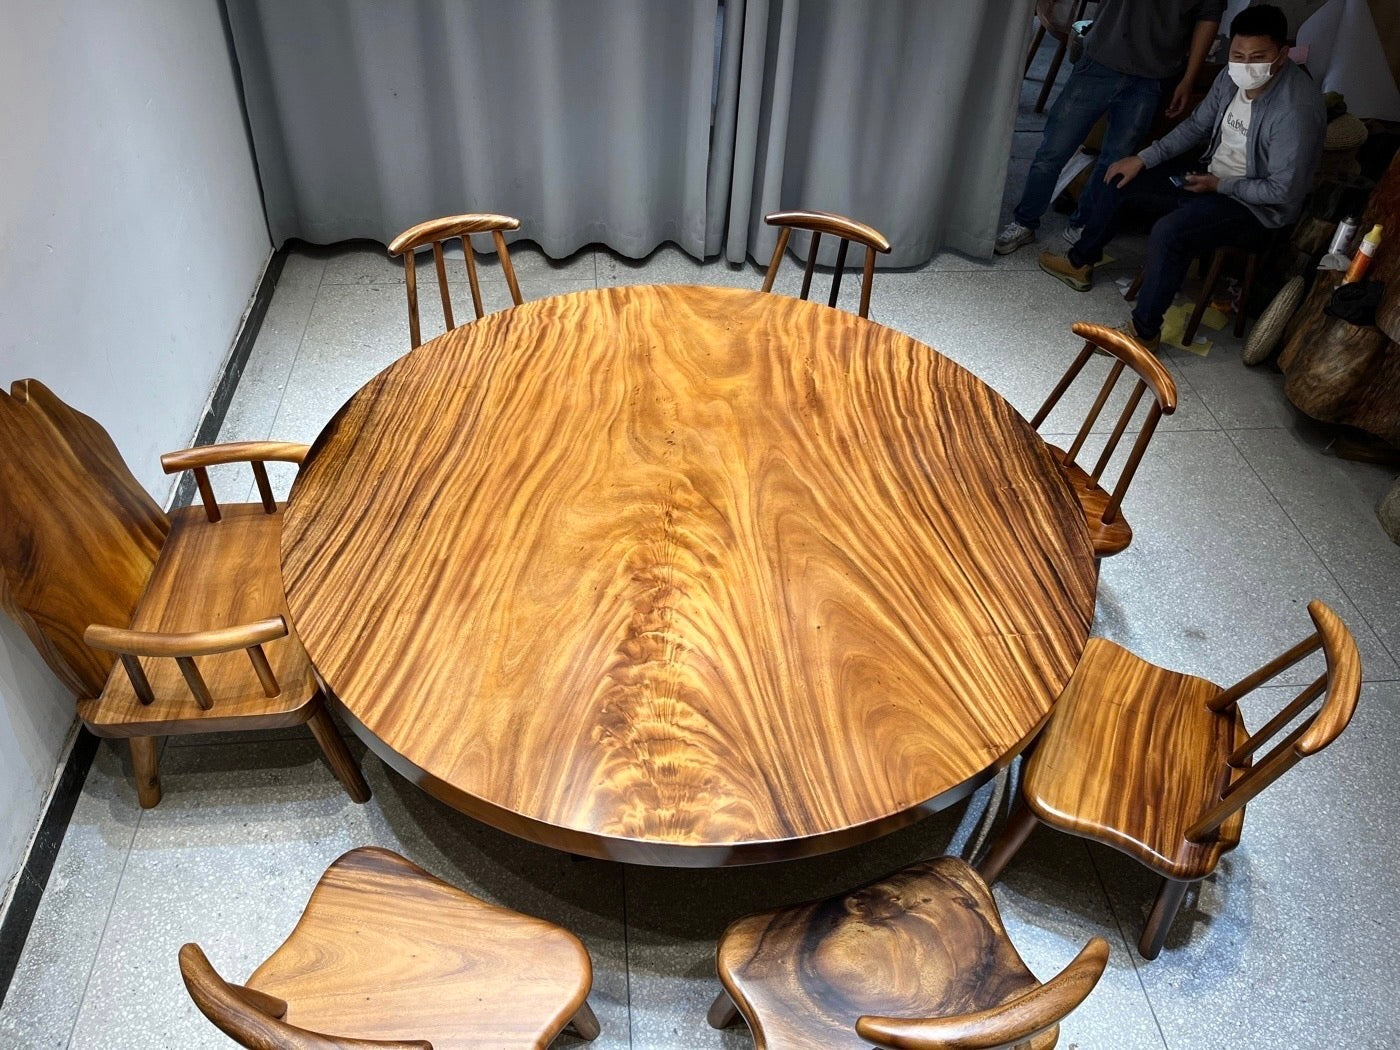 طاولة مستديرة خشبية كبيرة مقاس 71 بوصة، طاولة مستديرة من الخشب الصلب، قاعدة طاولة مستديرة خشبية، طاولة مستديرة خشبية كبيرة